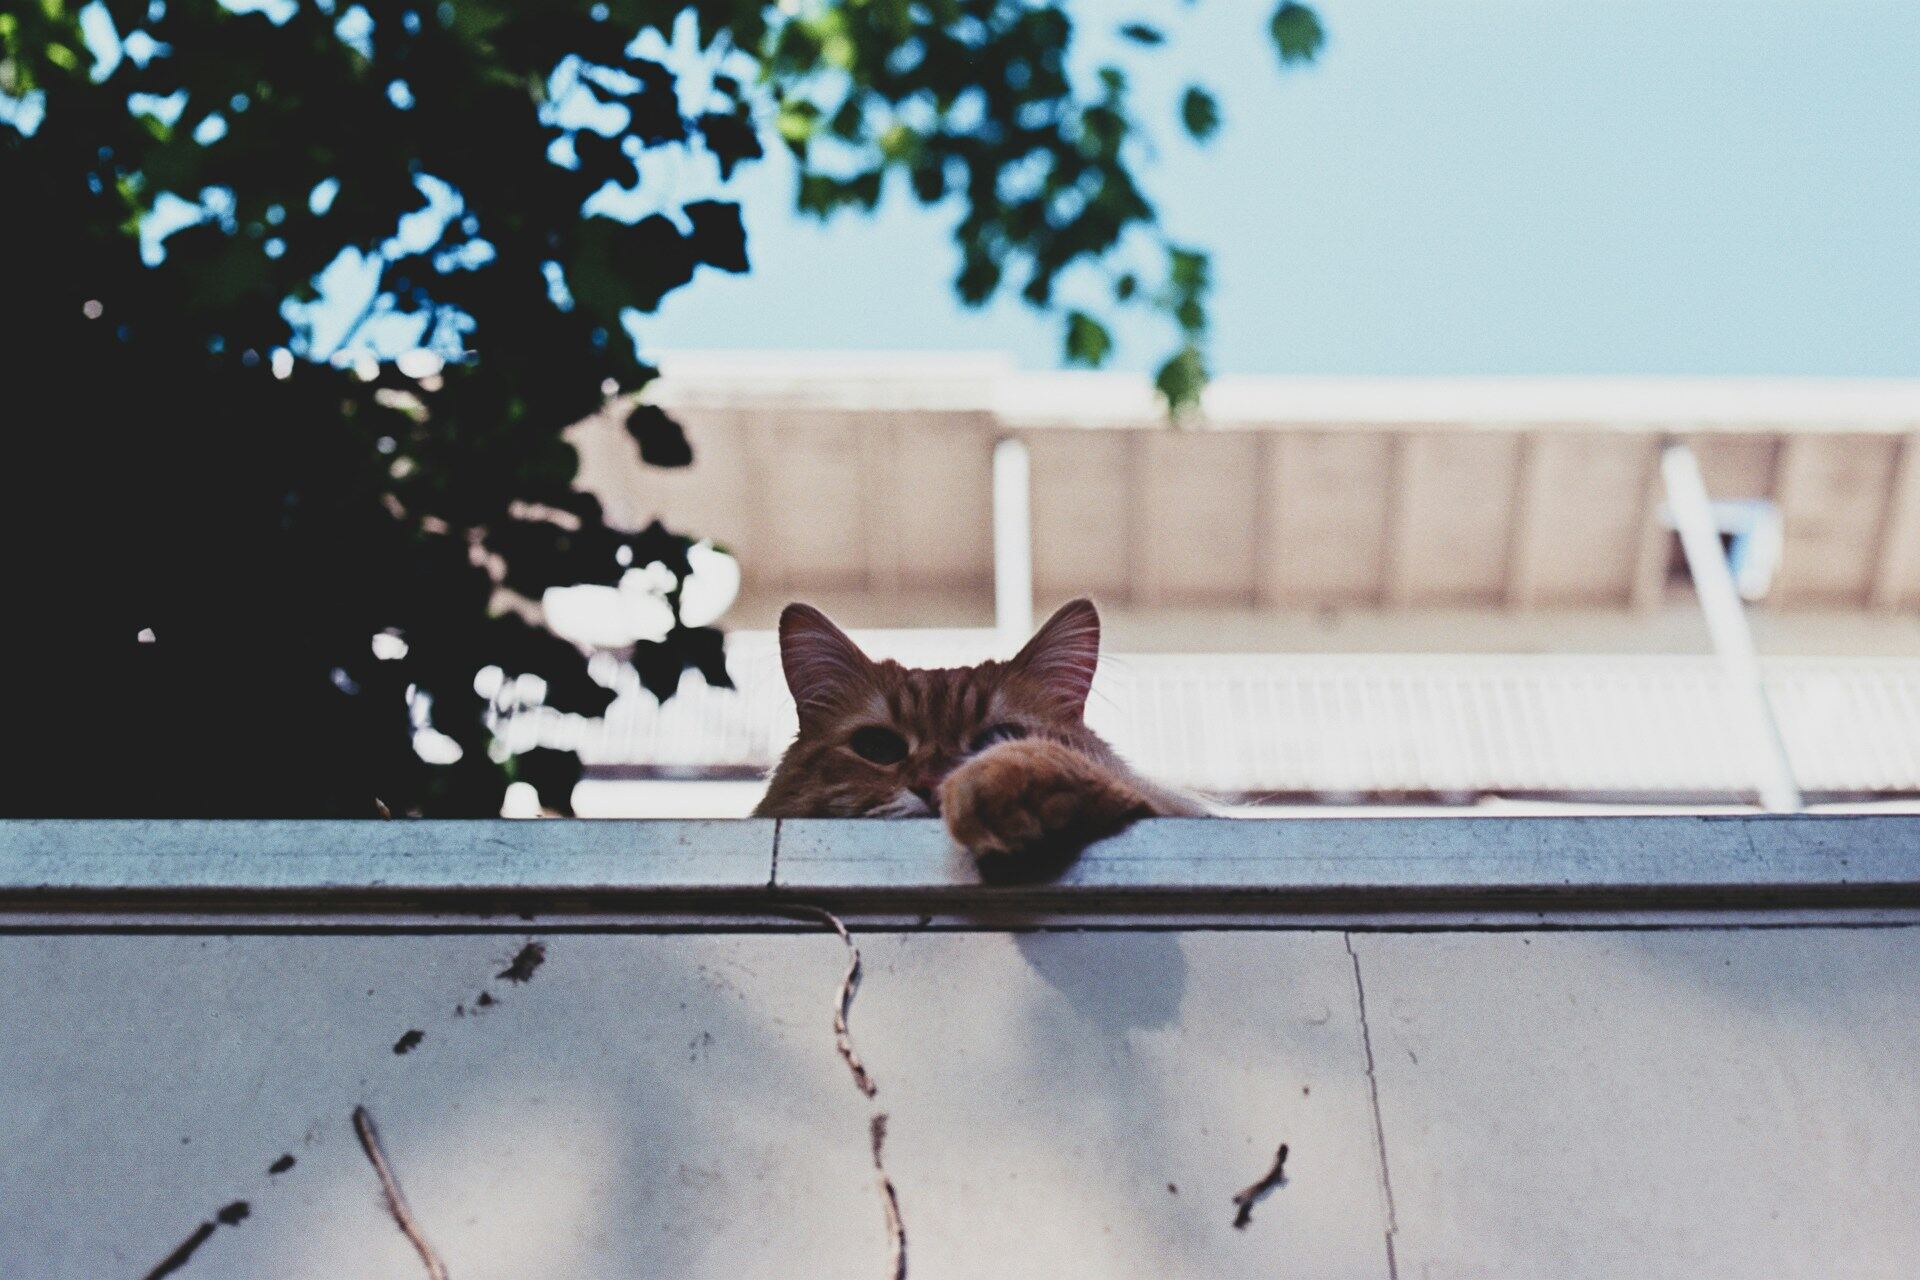 A cat peeking over a garden wall